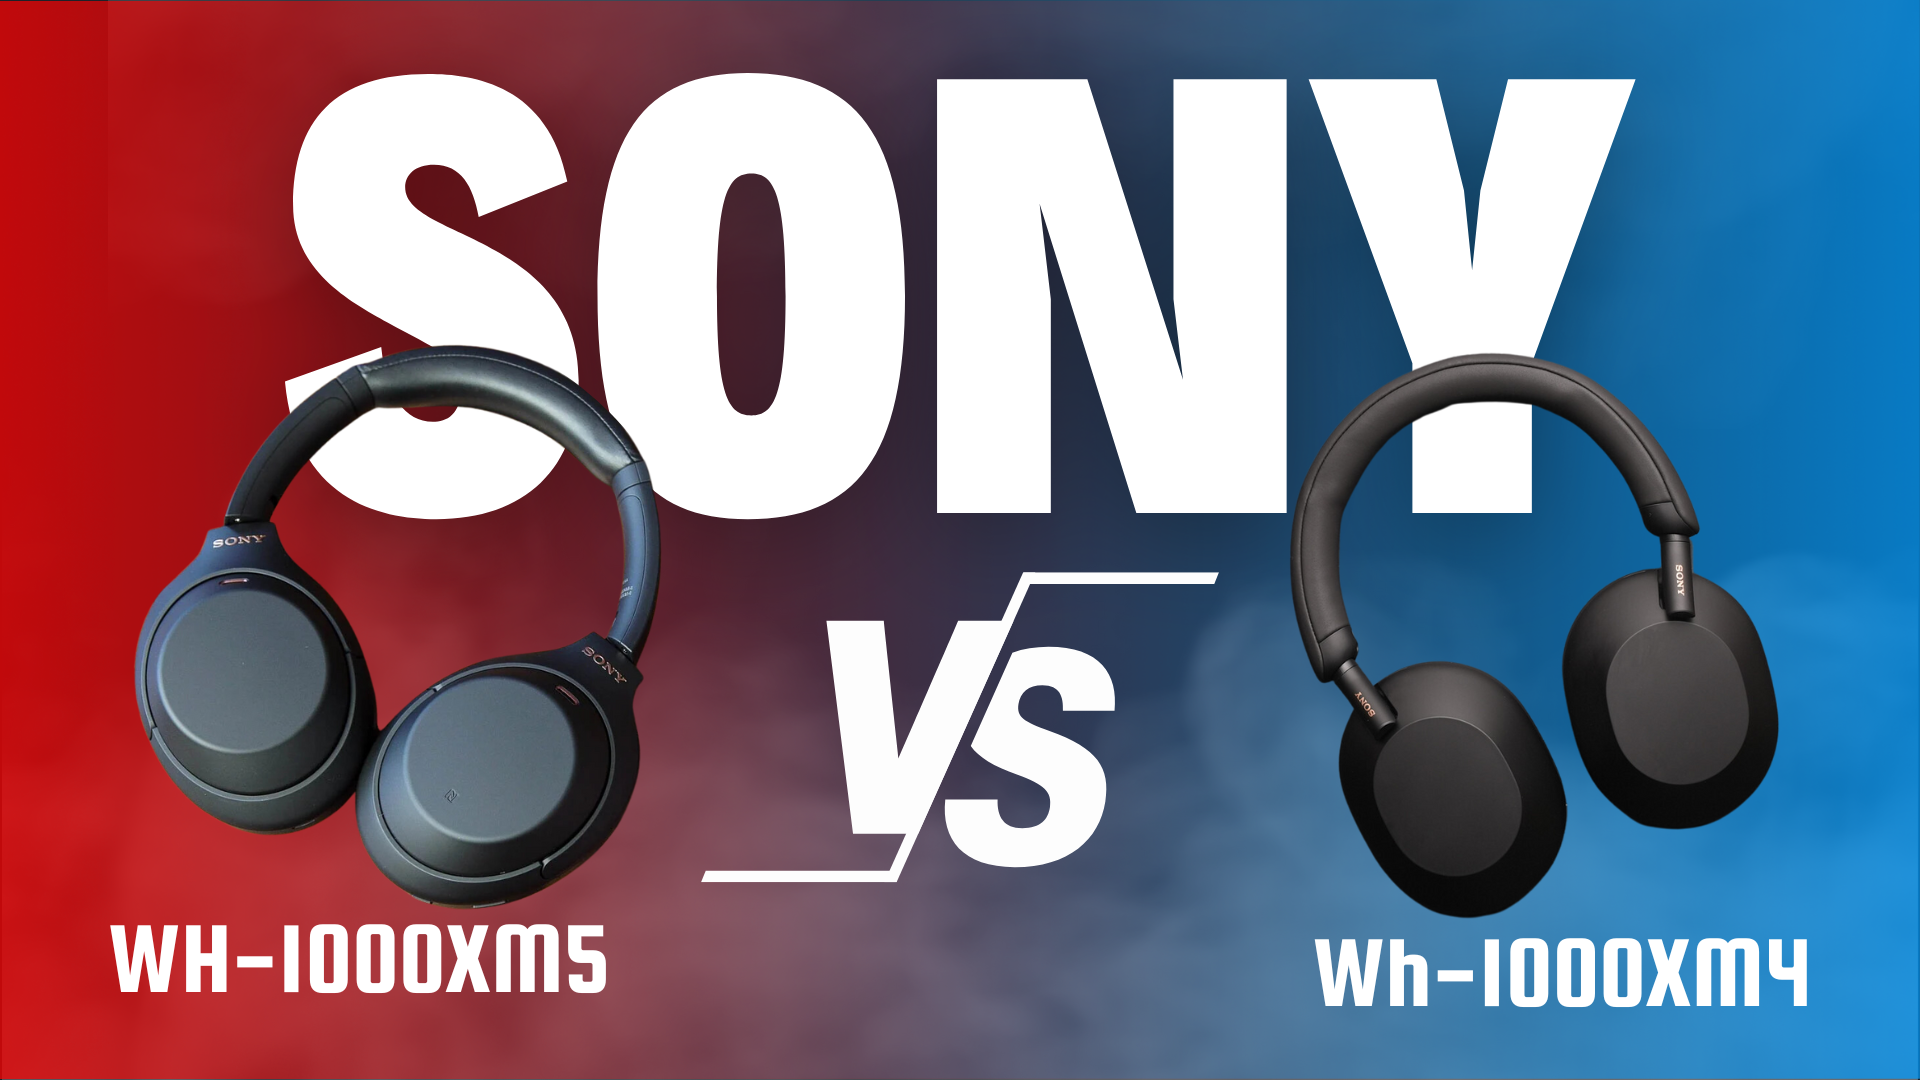 Sony WH-1000XM5 vs Sony WH-1000XM4